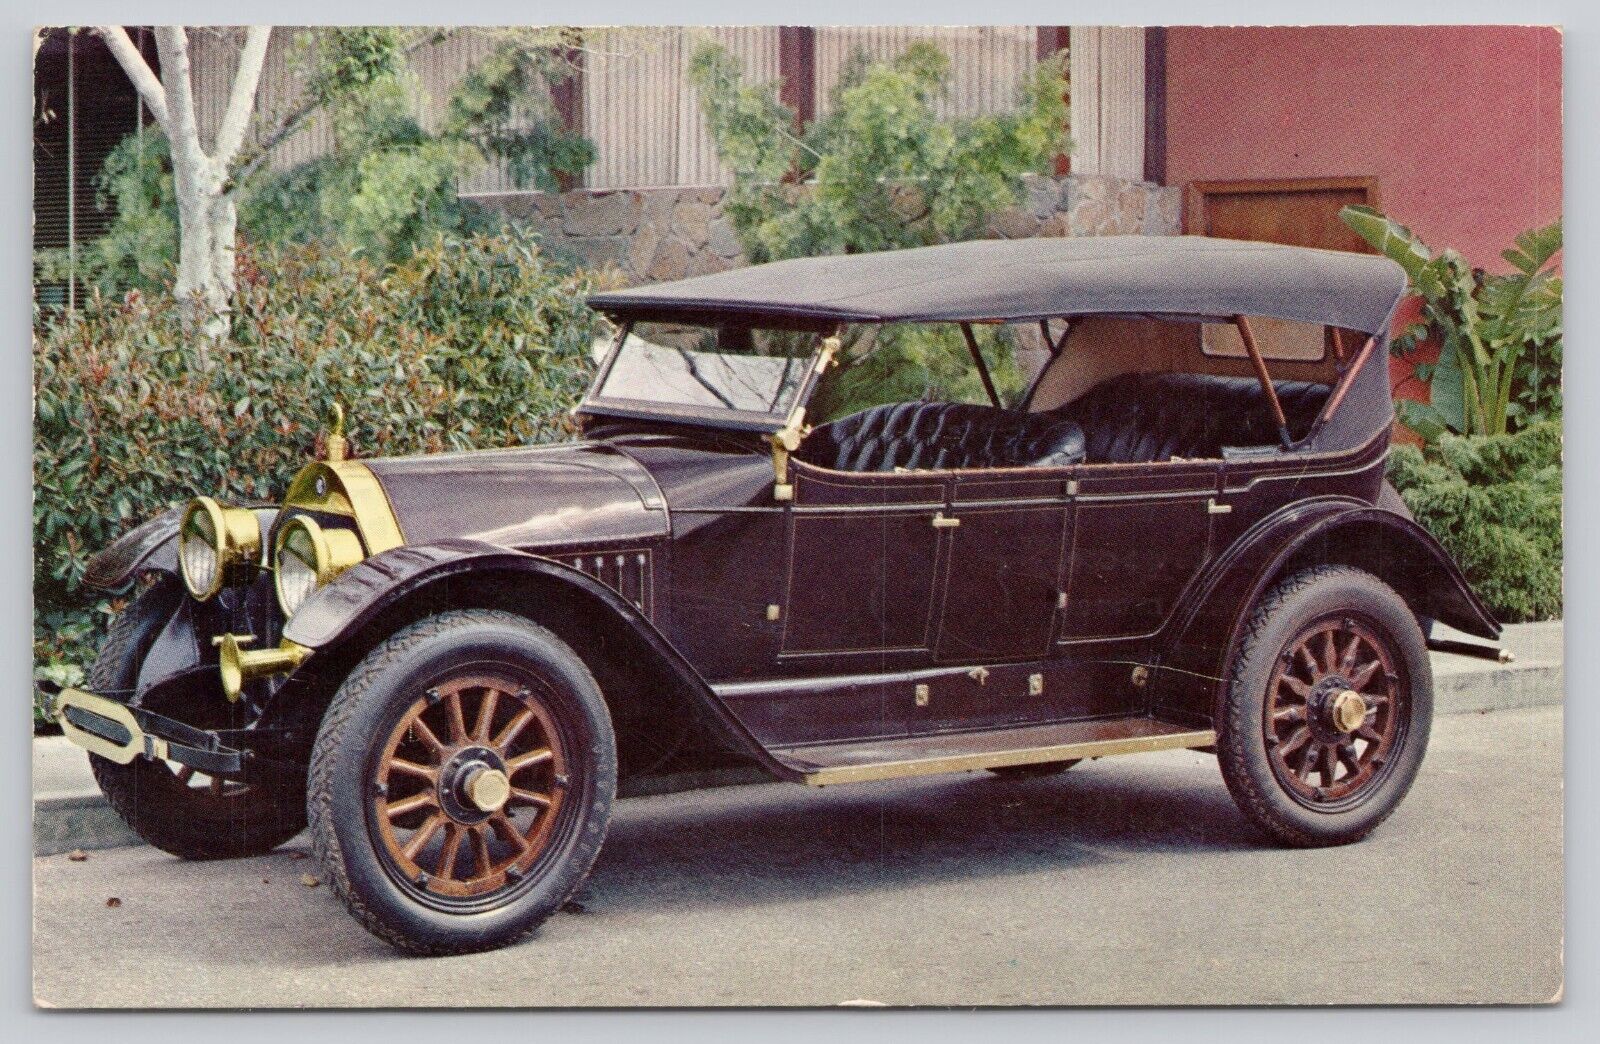 Beattie Motor Sales Waterford Michigan 1912 Chalmers Vintage Postcard